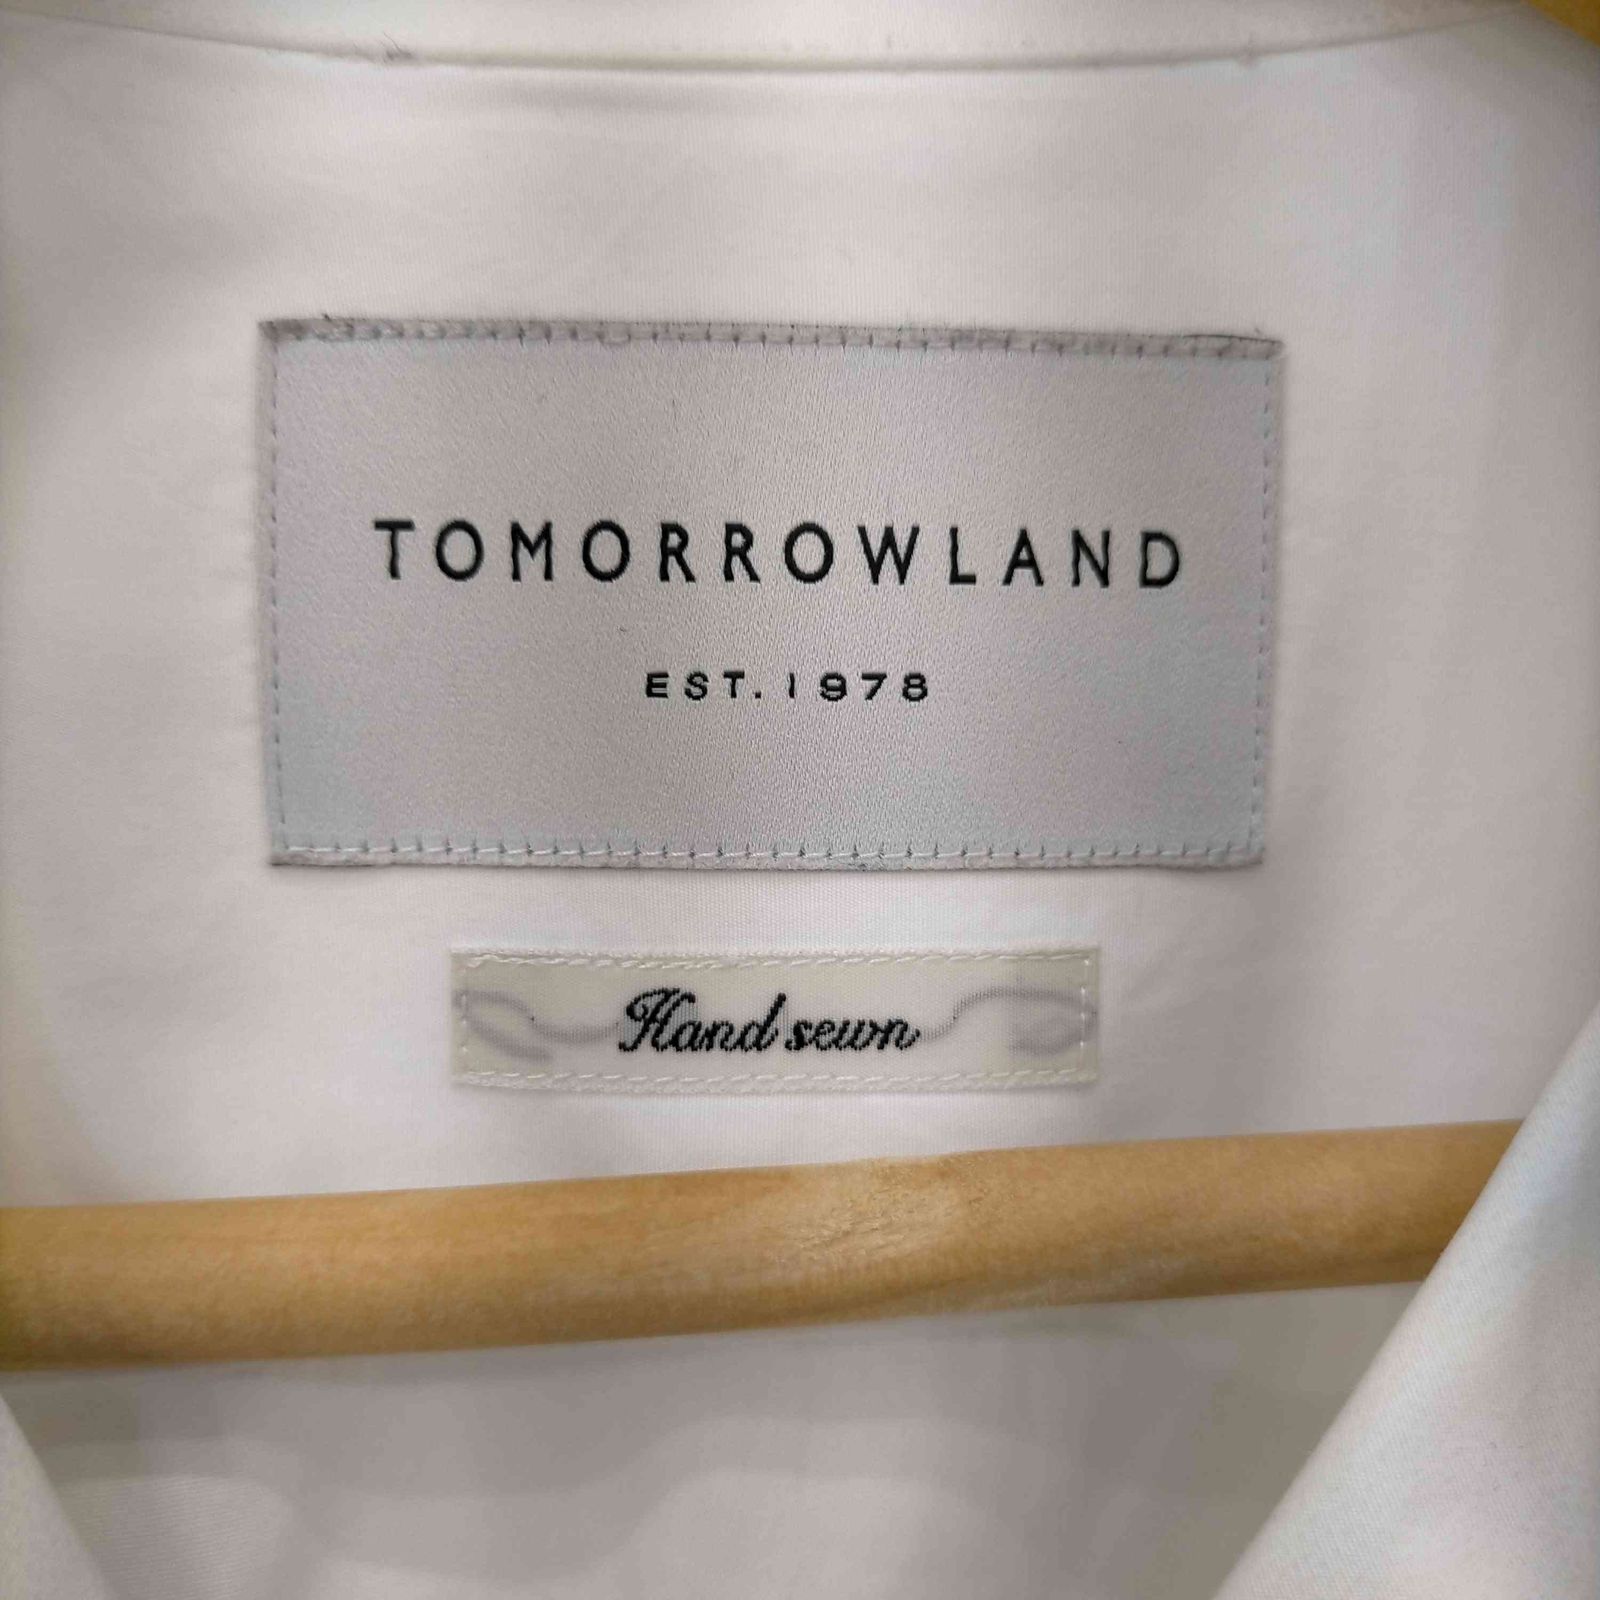 TOMORROWLAND オープンカラーシャツ S メンズ 高級コットン 美品